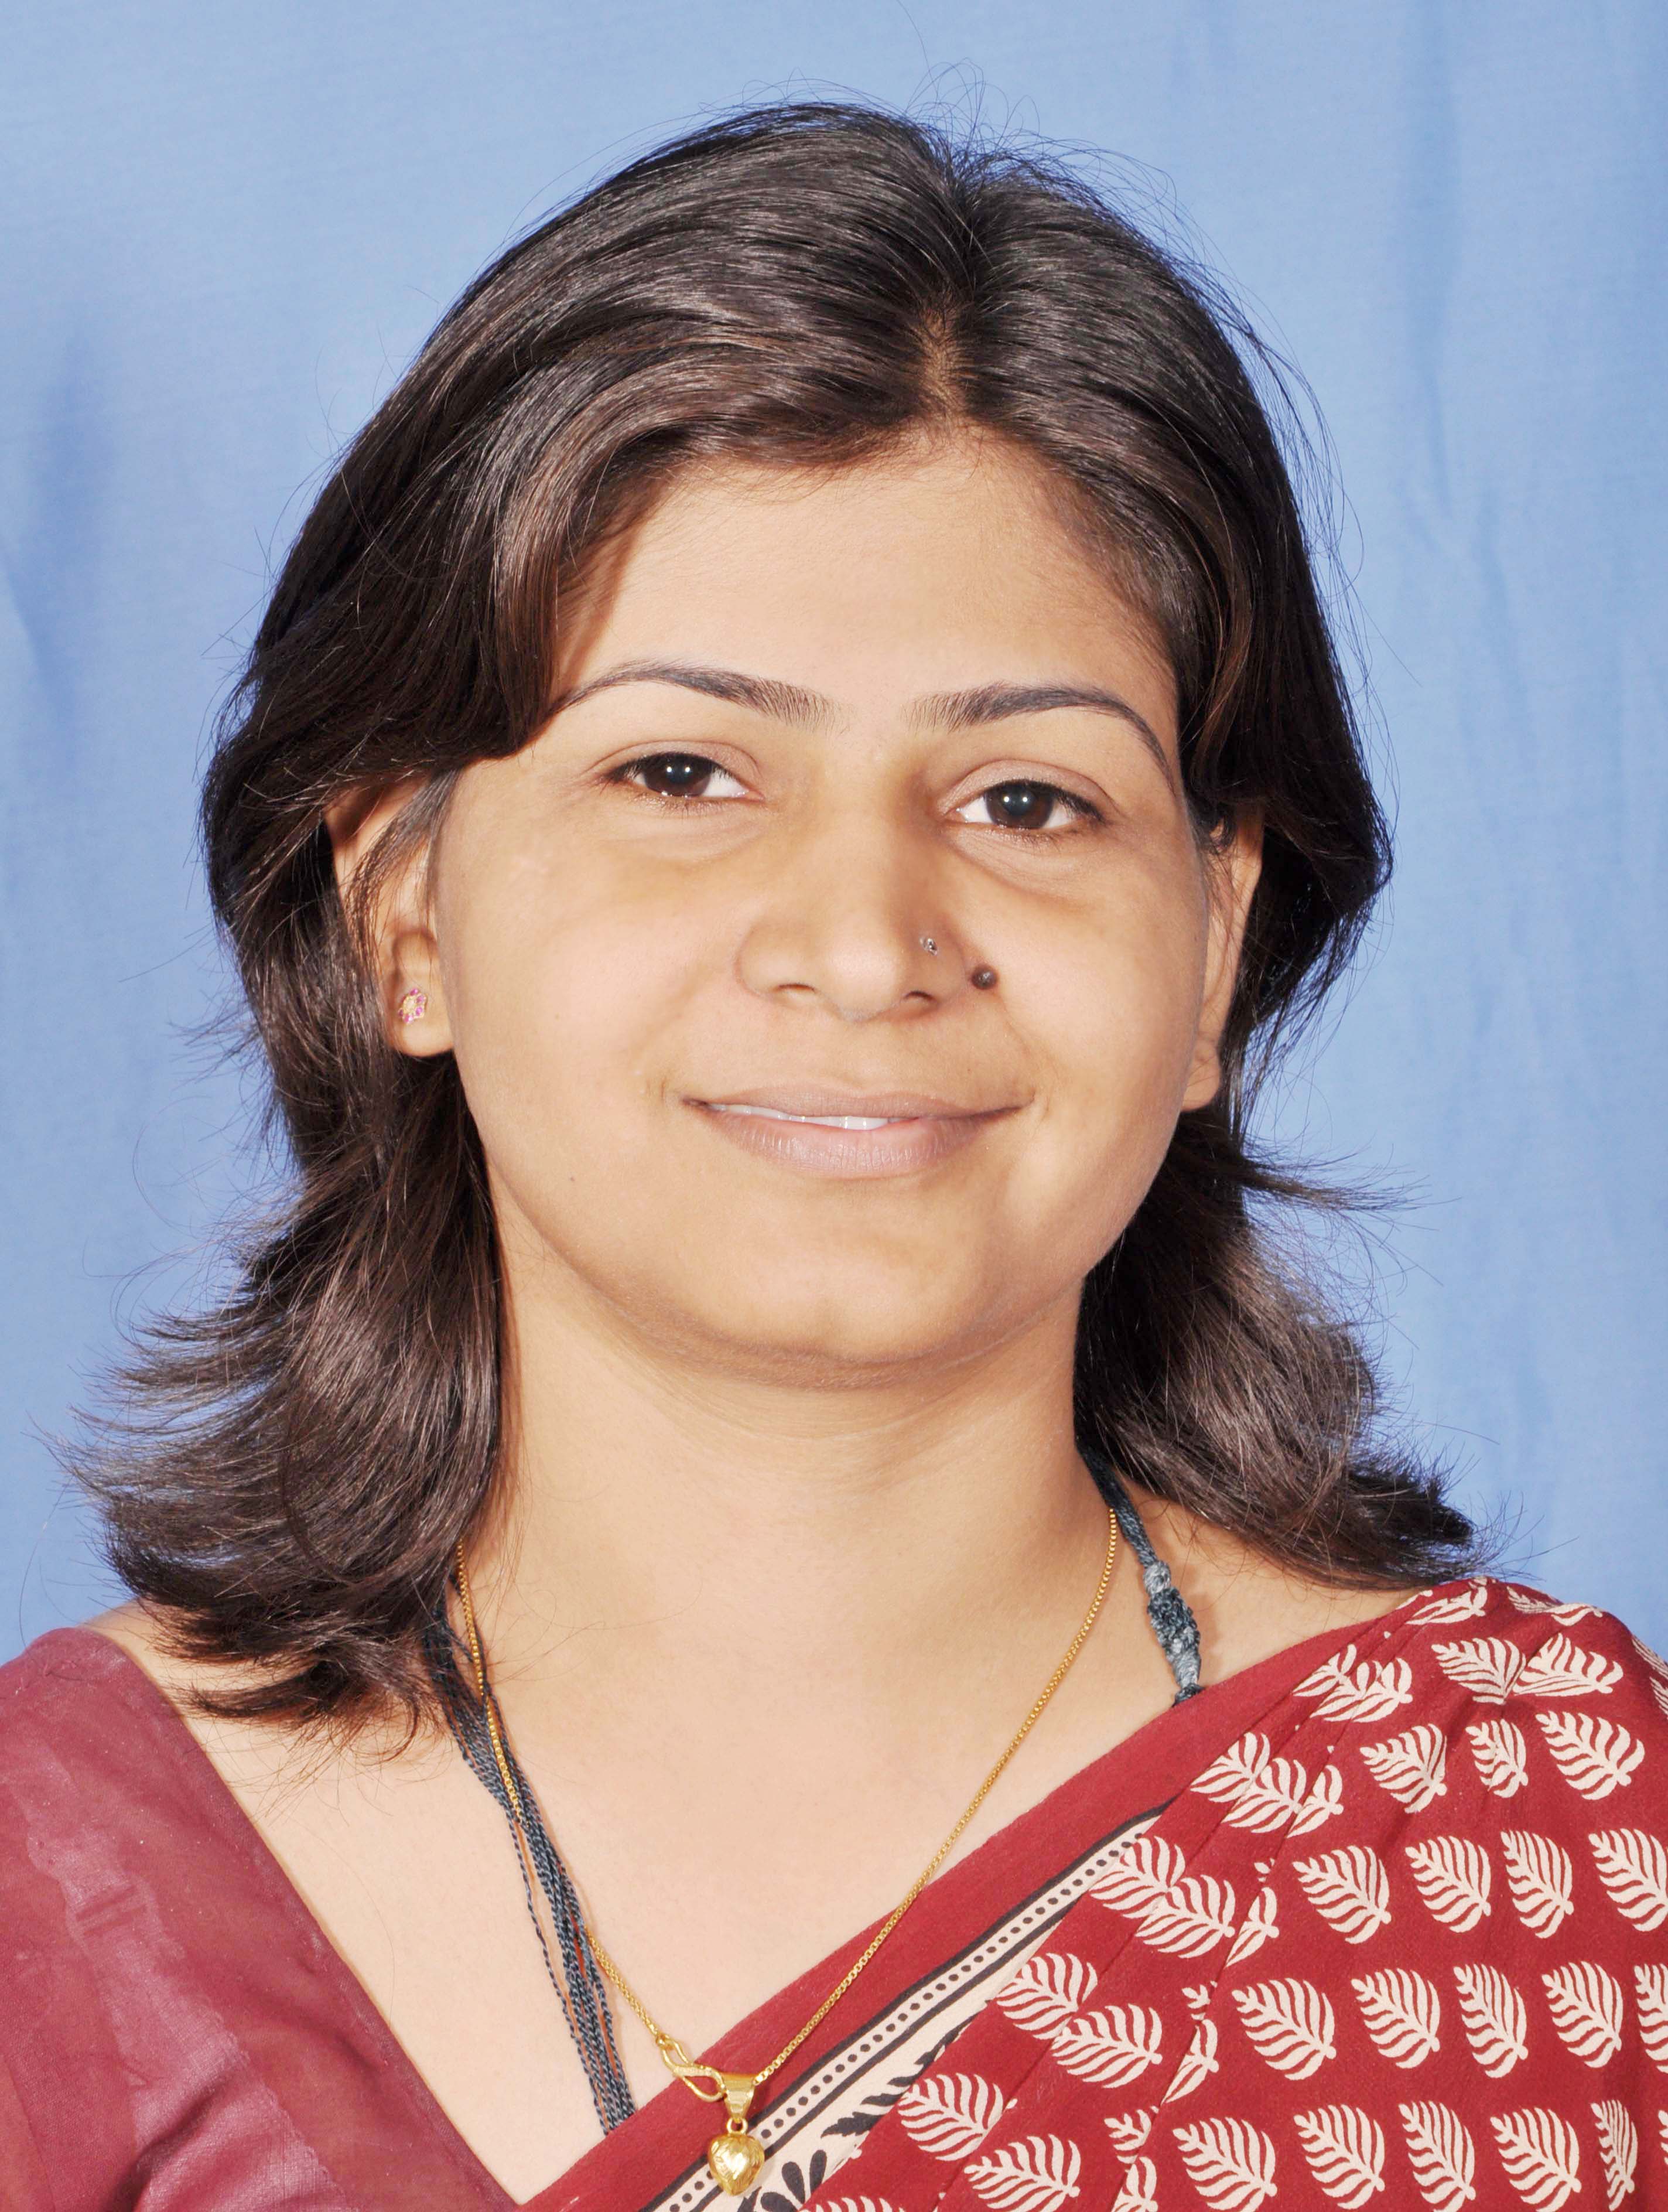 Aparna Shekhawat